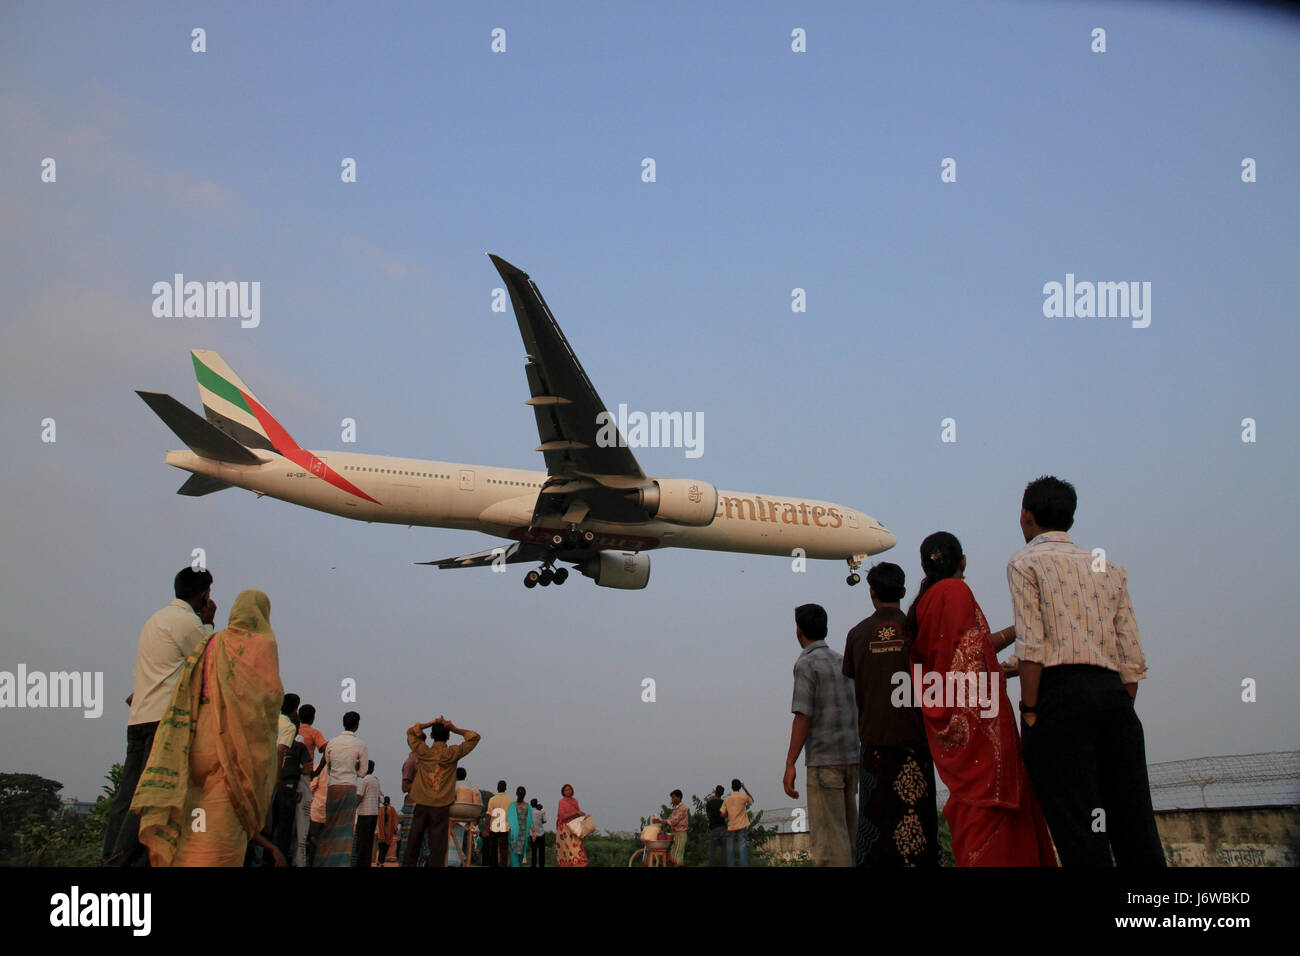 Las personas se reúnen en el lado norte del Aeropuerto Internacional Shahjalal para ver los aviones que aterrizan en el aeropuerto. Dhaka, Bangladesh. Foto de stock